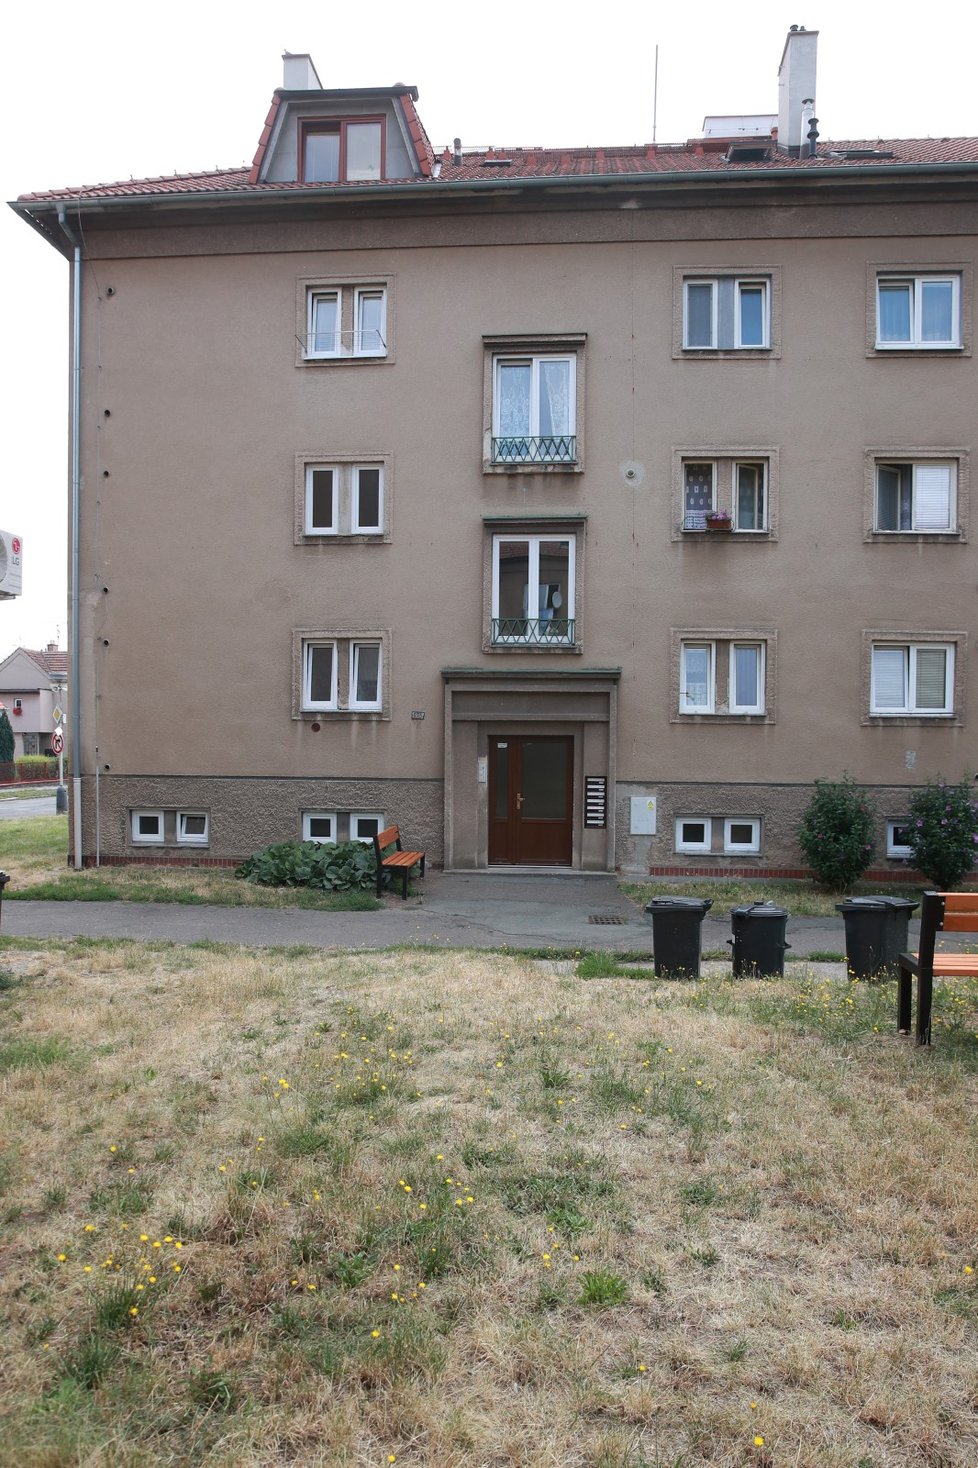 Předseda STAN Vít Rakušan uvedl v majetkovém přiznání, že vlastní dva byty v Kolíně.